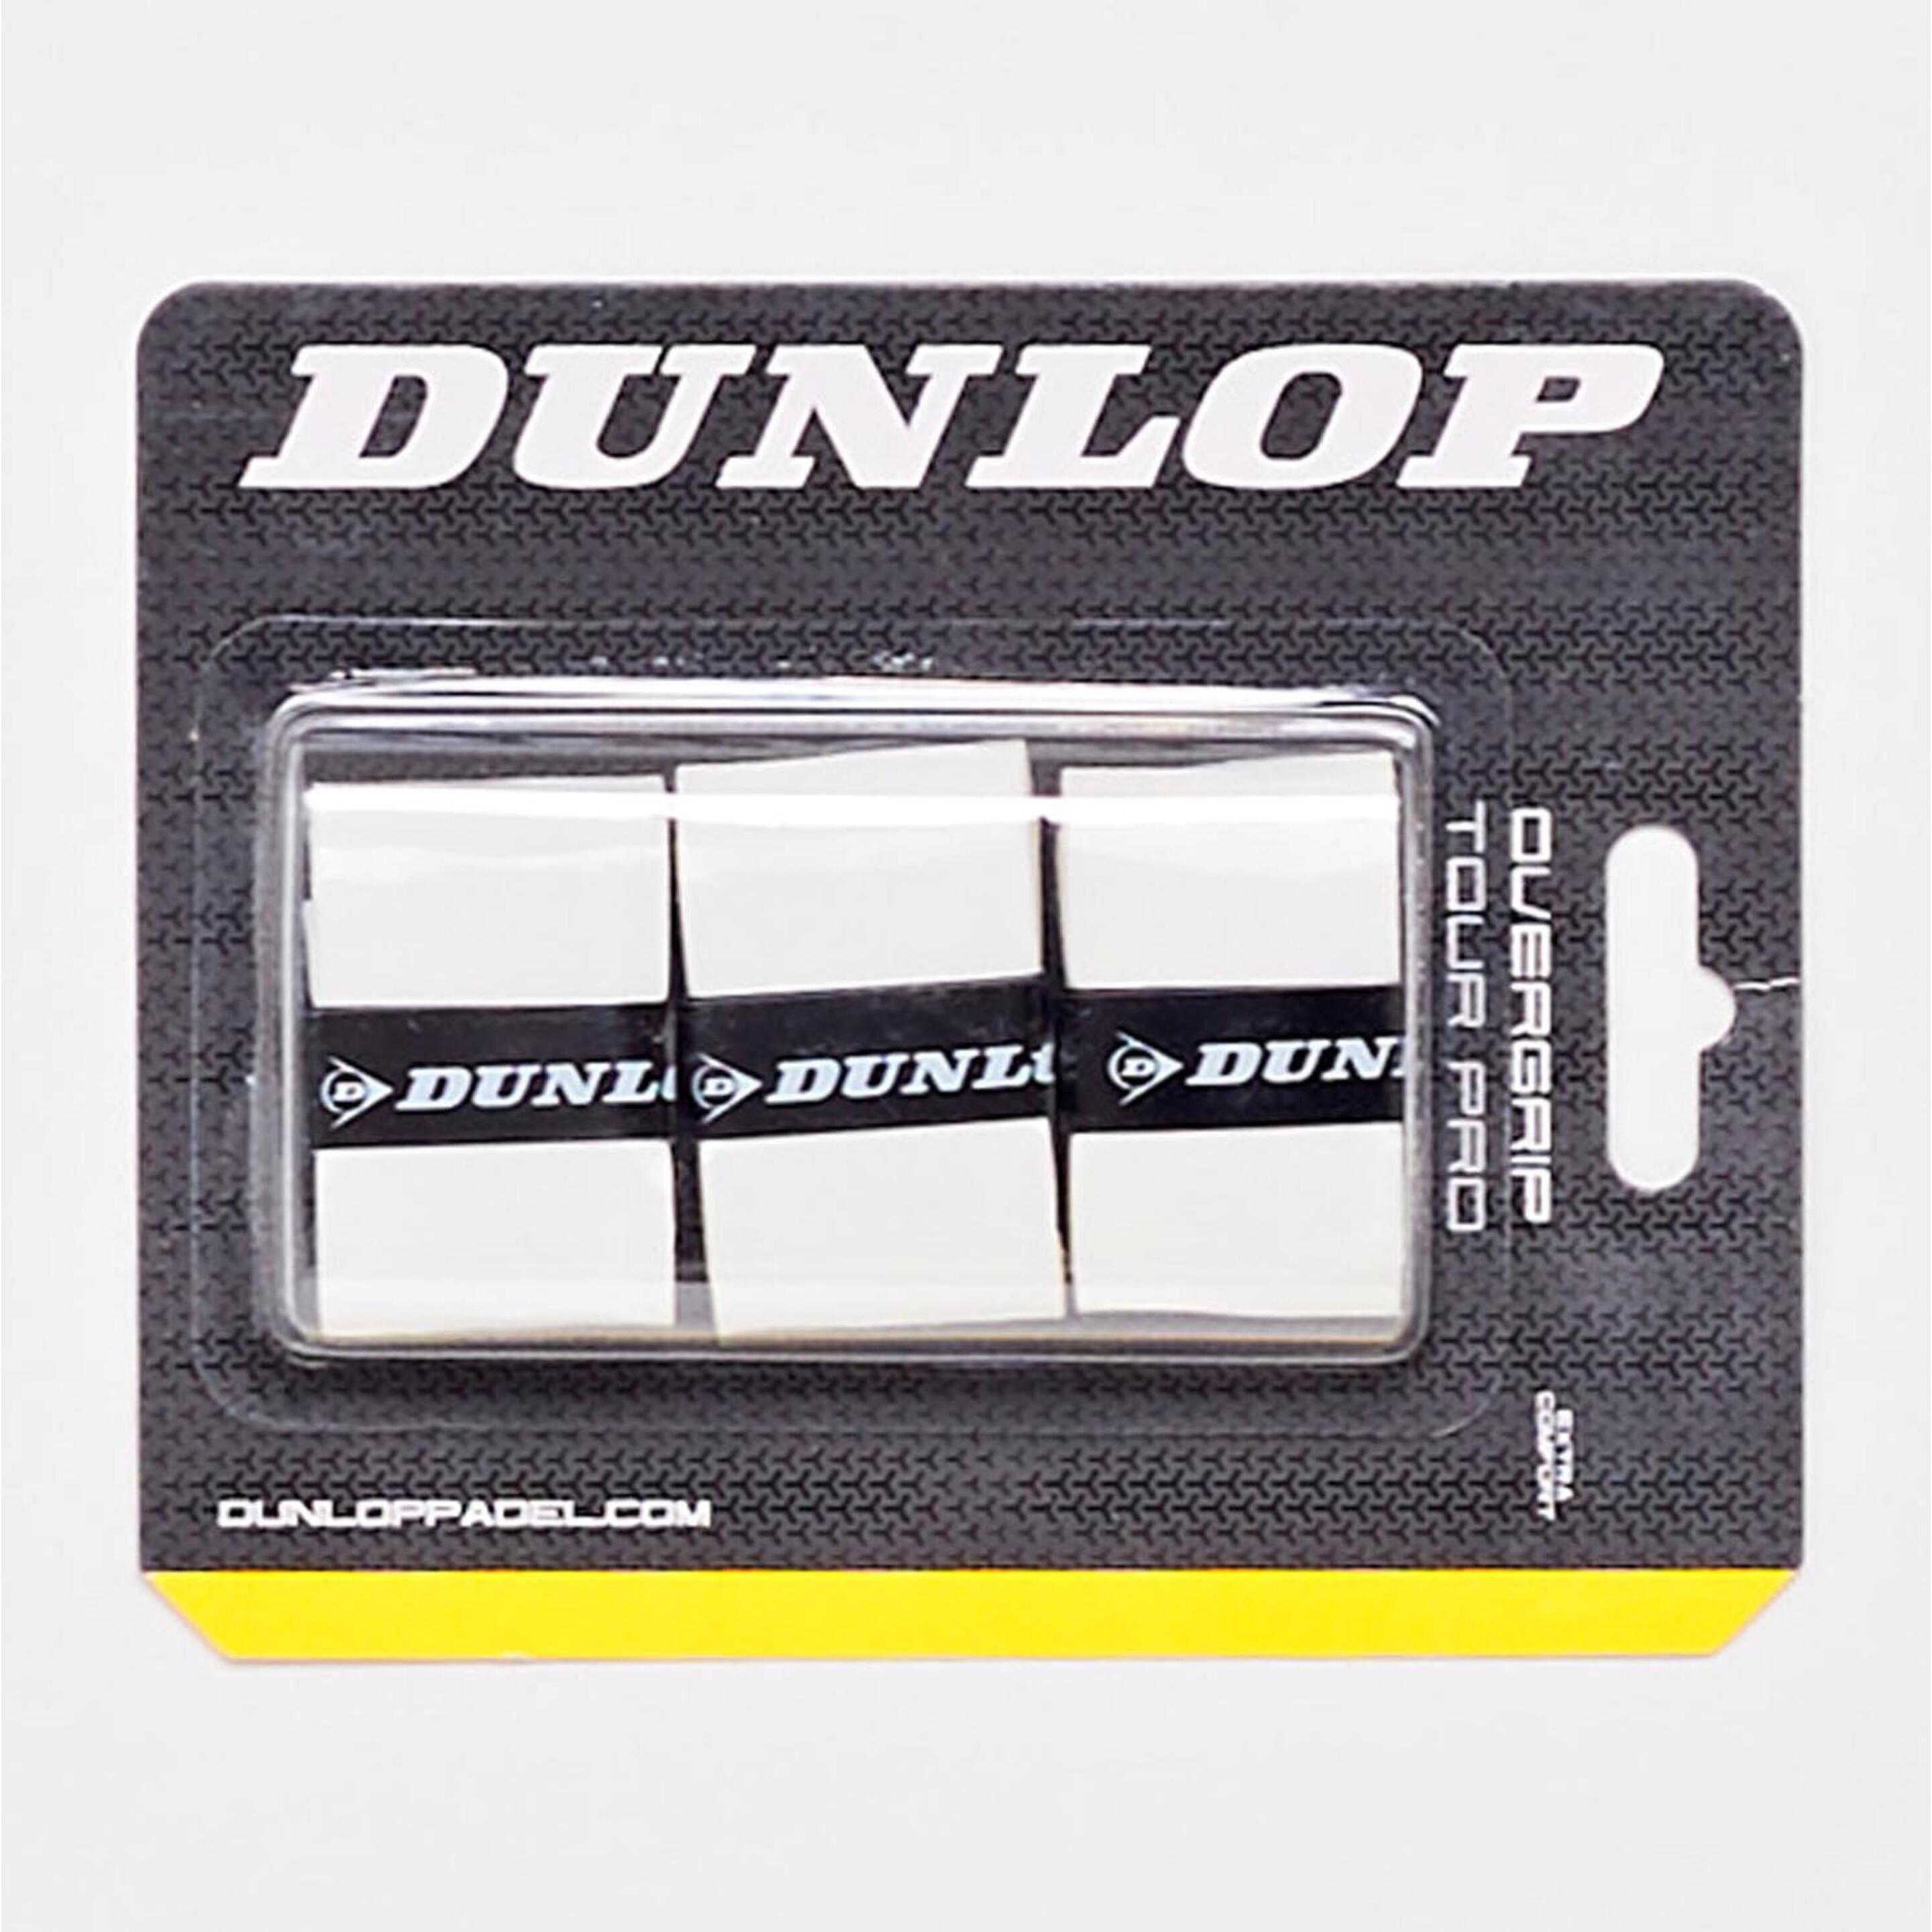 Dunlop Tour Pro